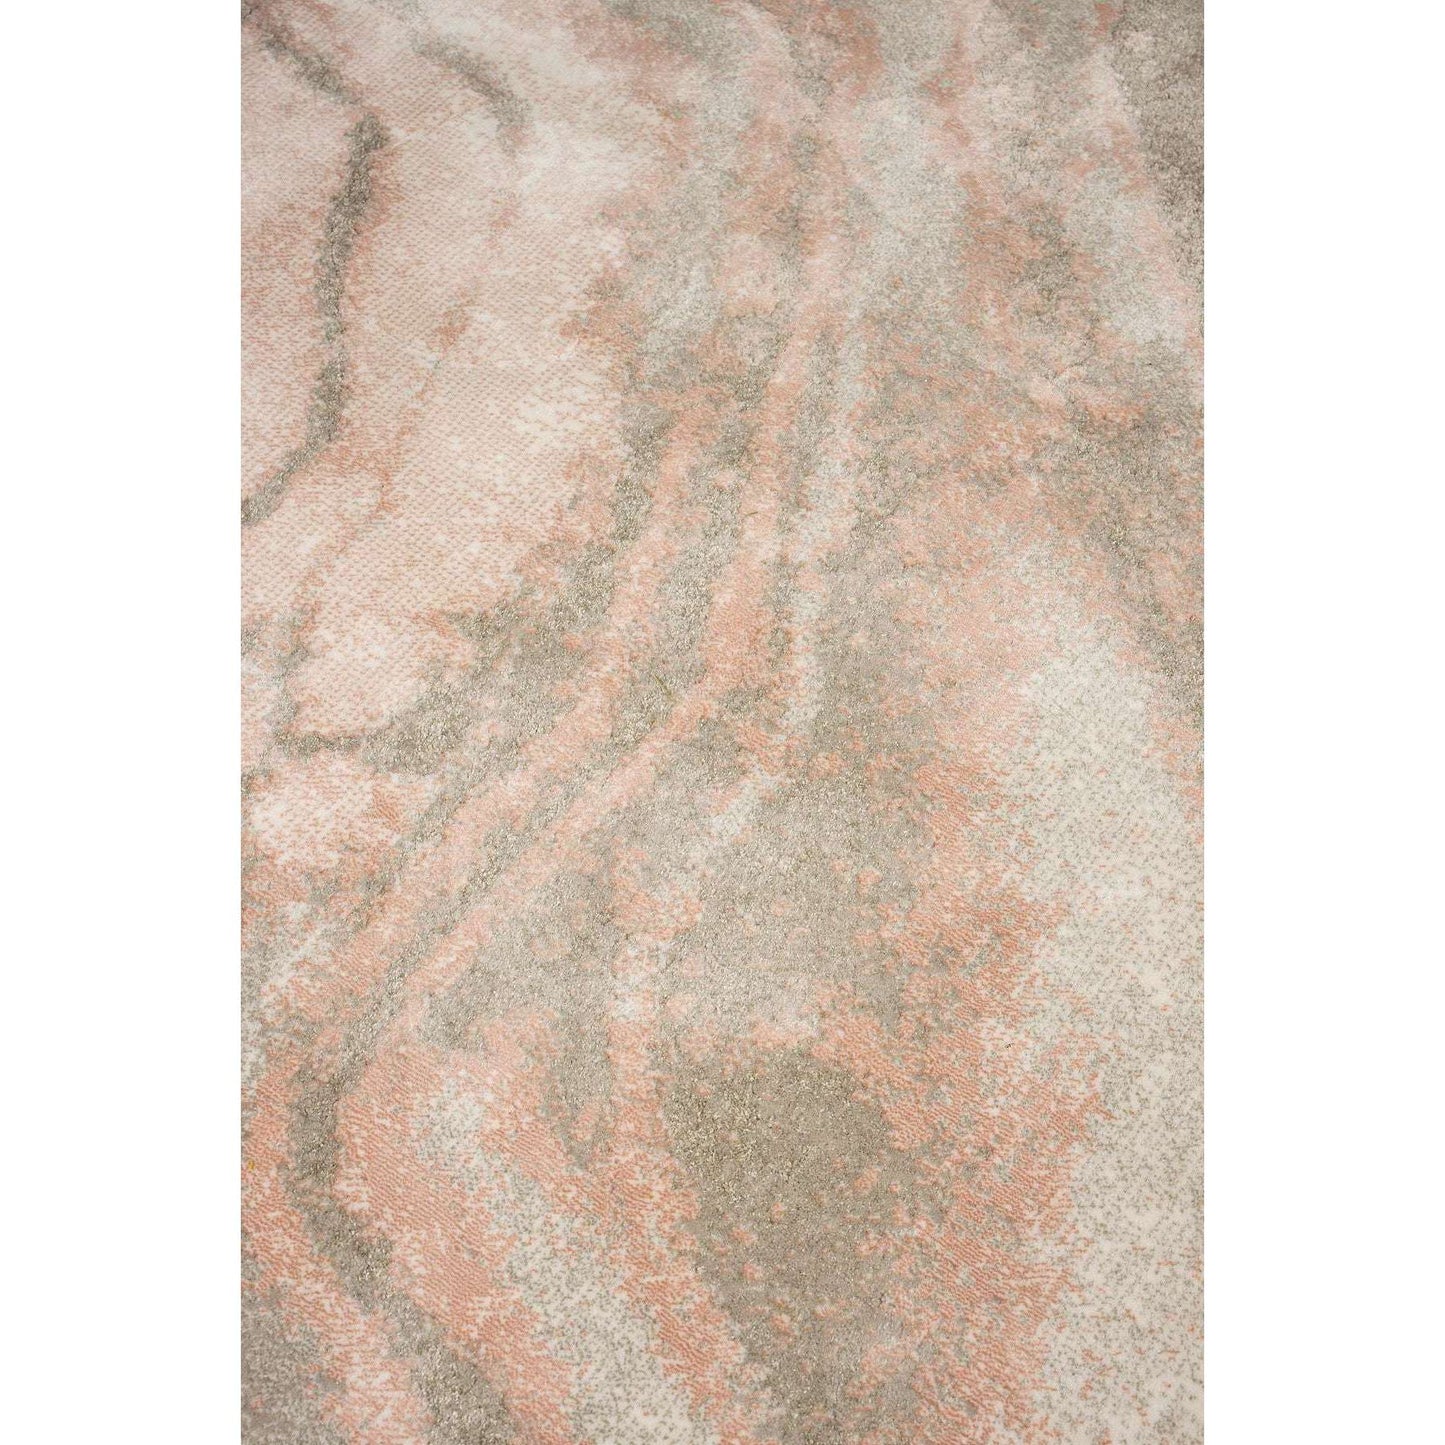 Zuiver vloerkleed Solar grijs/roze Ø200 cm